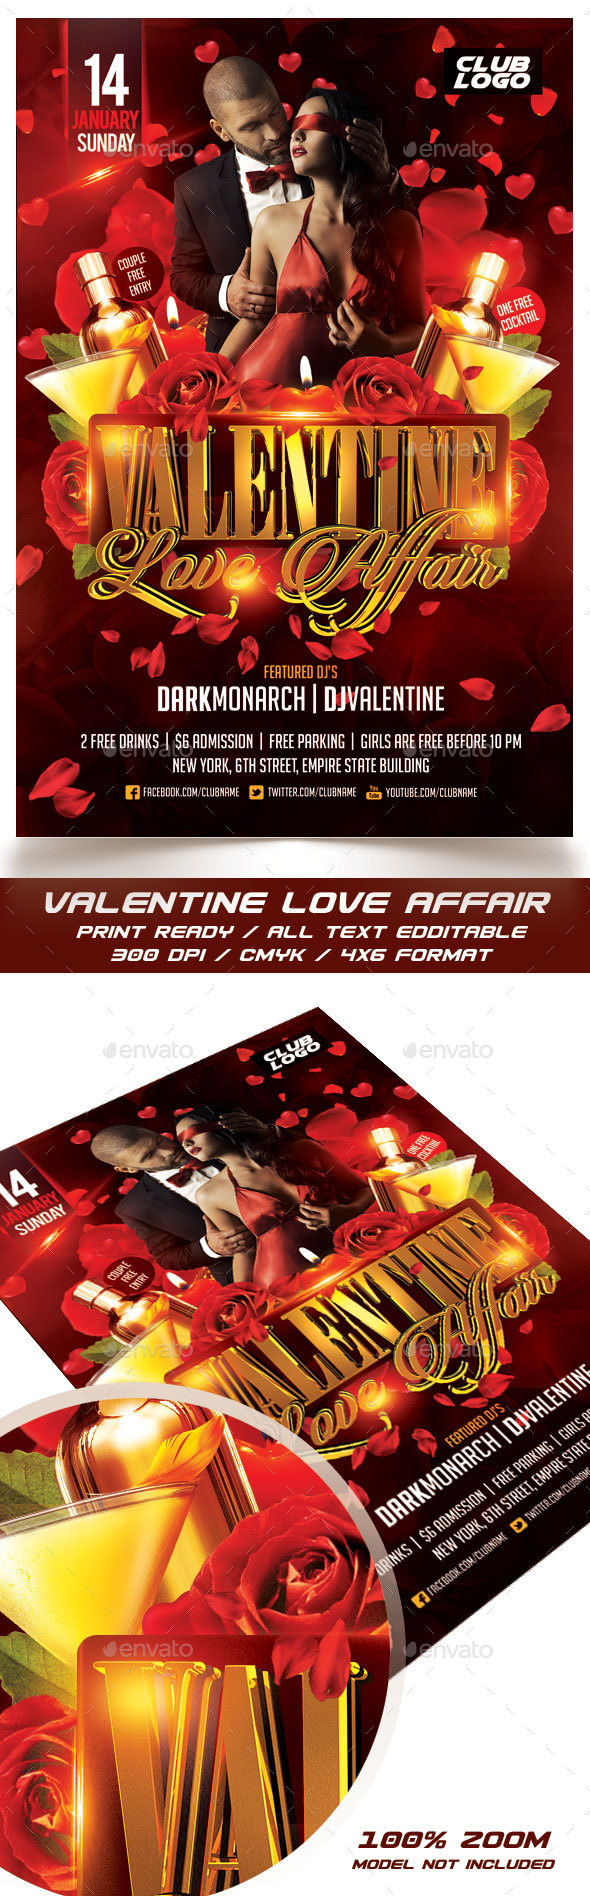 Valentine Love Affair Flyer